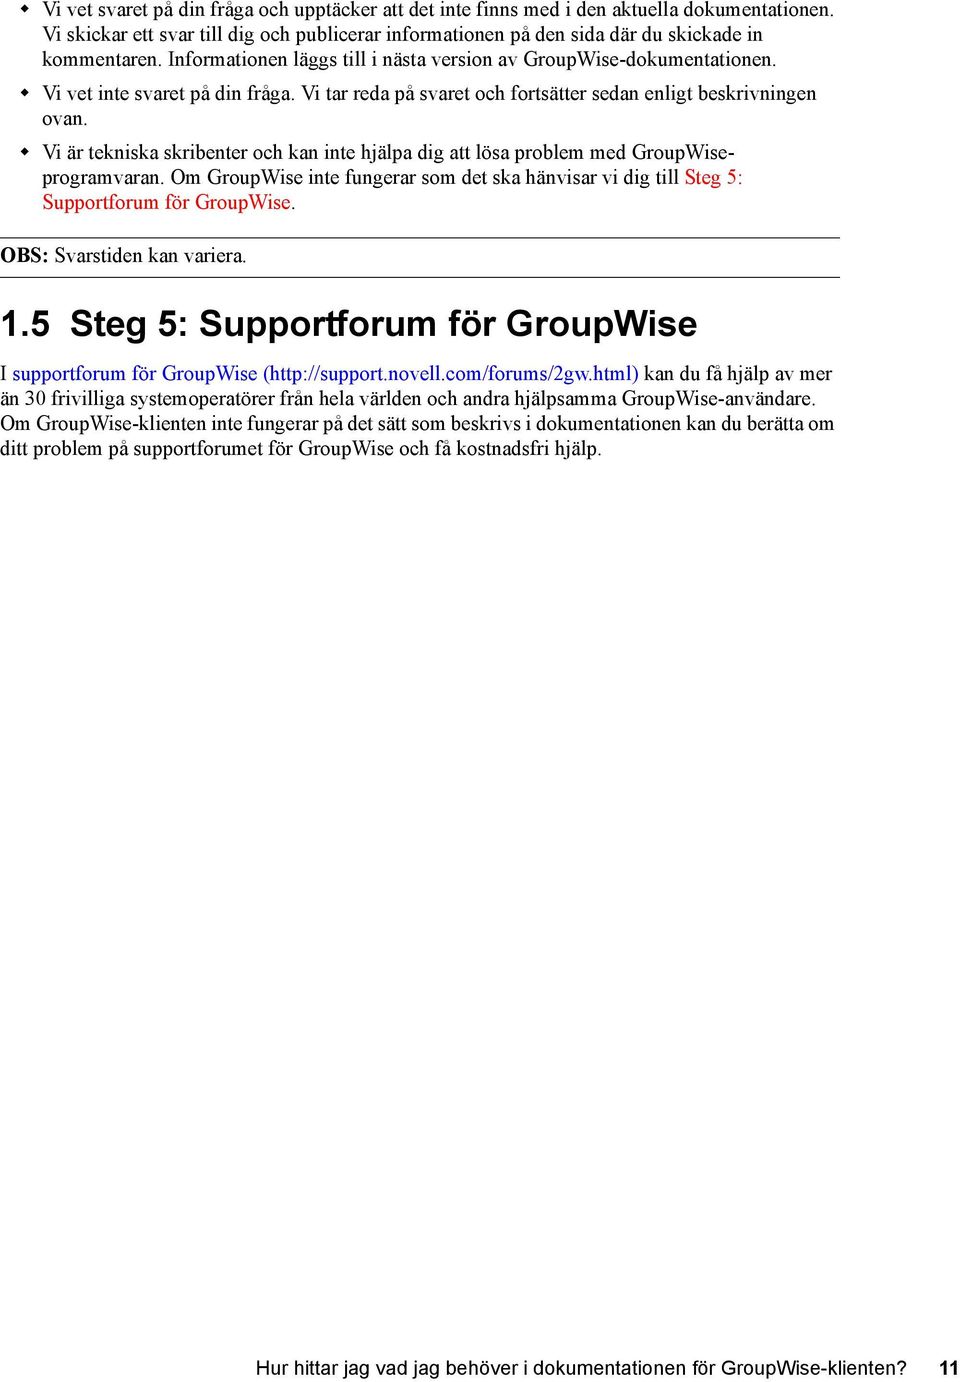 Vi är tekniska skribenter och kan inte hjälpa dig att lösa problem med GroupWiseprogramvaran. Om GroupWise inte fungerar som det ska hänvisar vi dig till Steg 5: Supportforum för GroupWise.